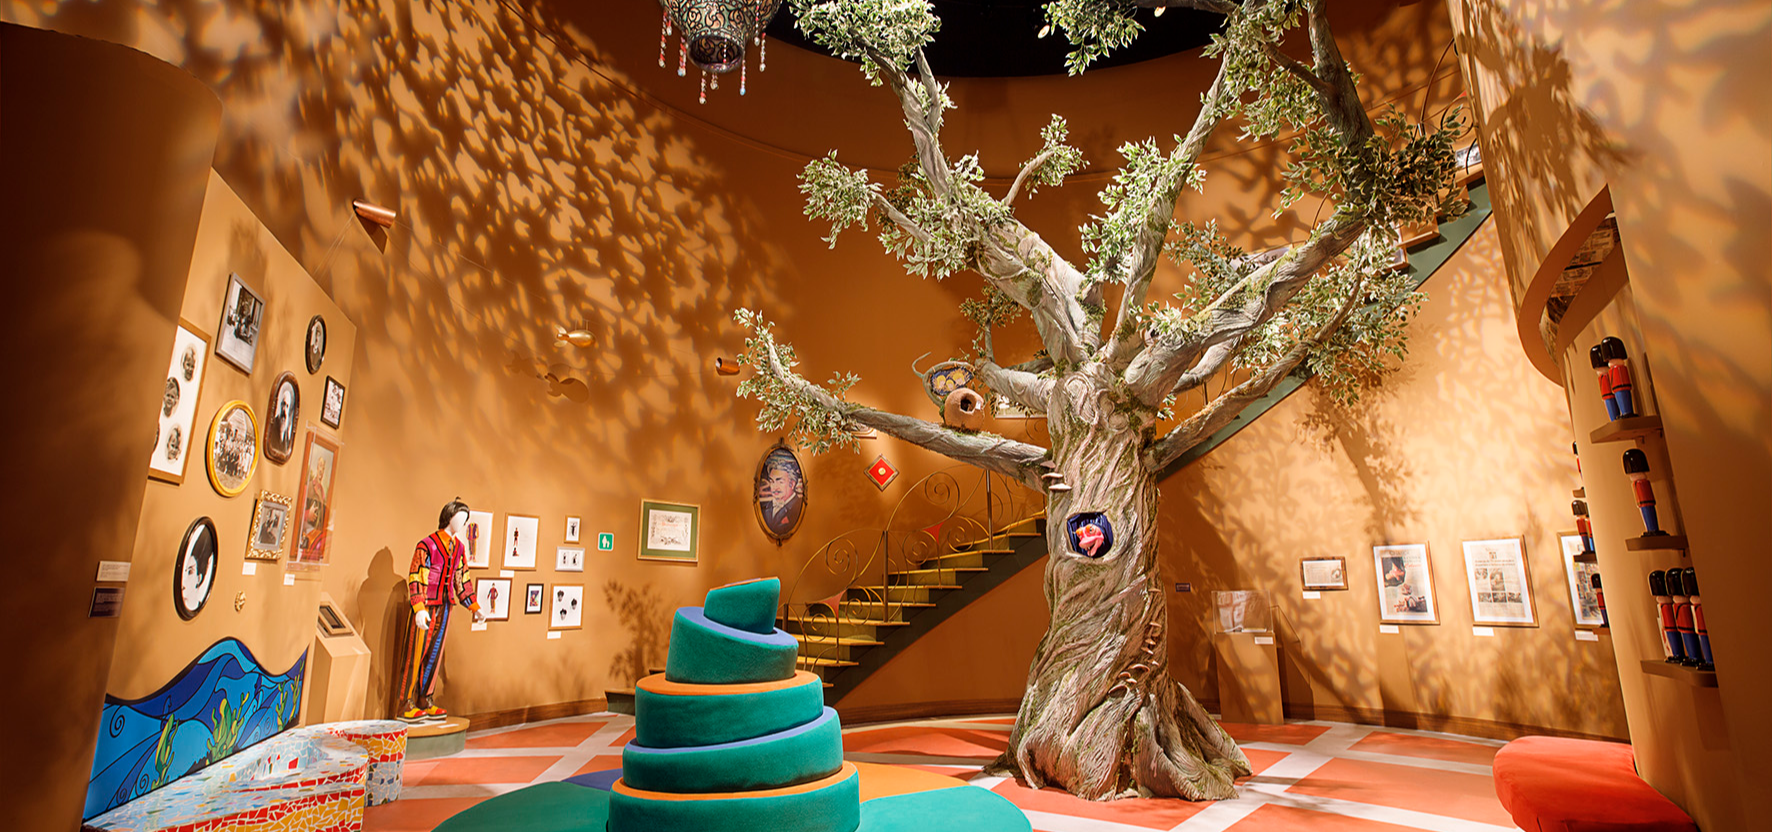 Castelo Rá-Tim-Bum celebra 50 anos do MIS com tour virtual 360° e Live